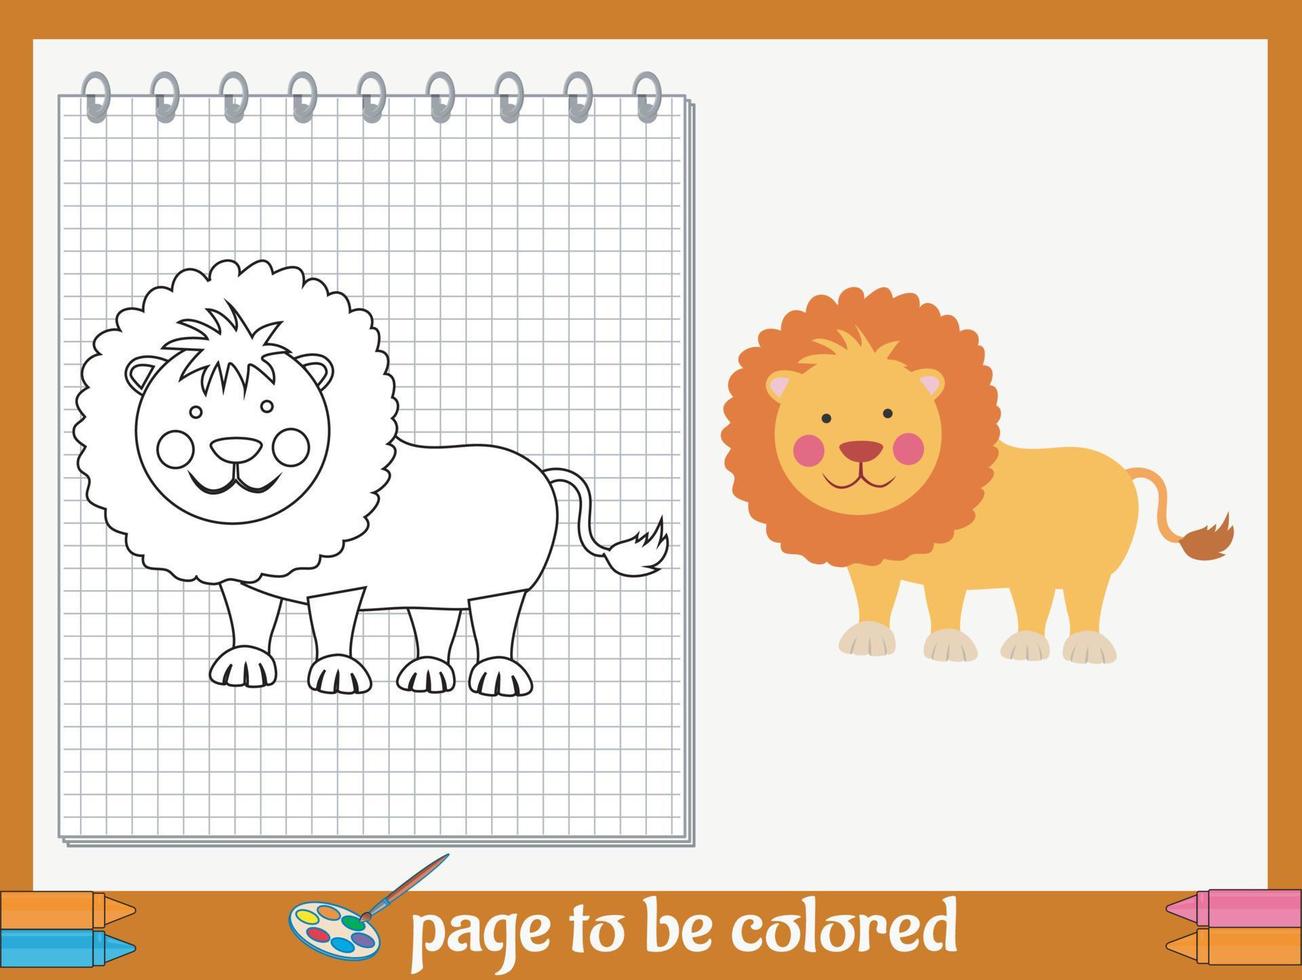 imagens de desenhos animados para colorir para crianças vetor